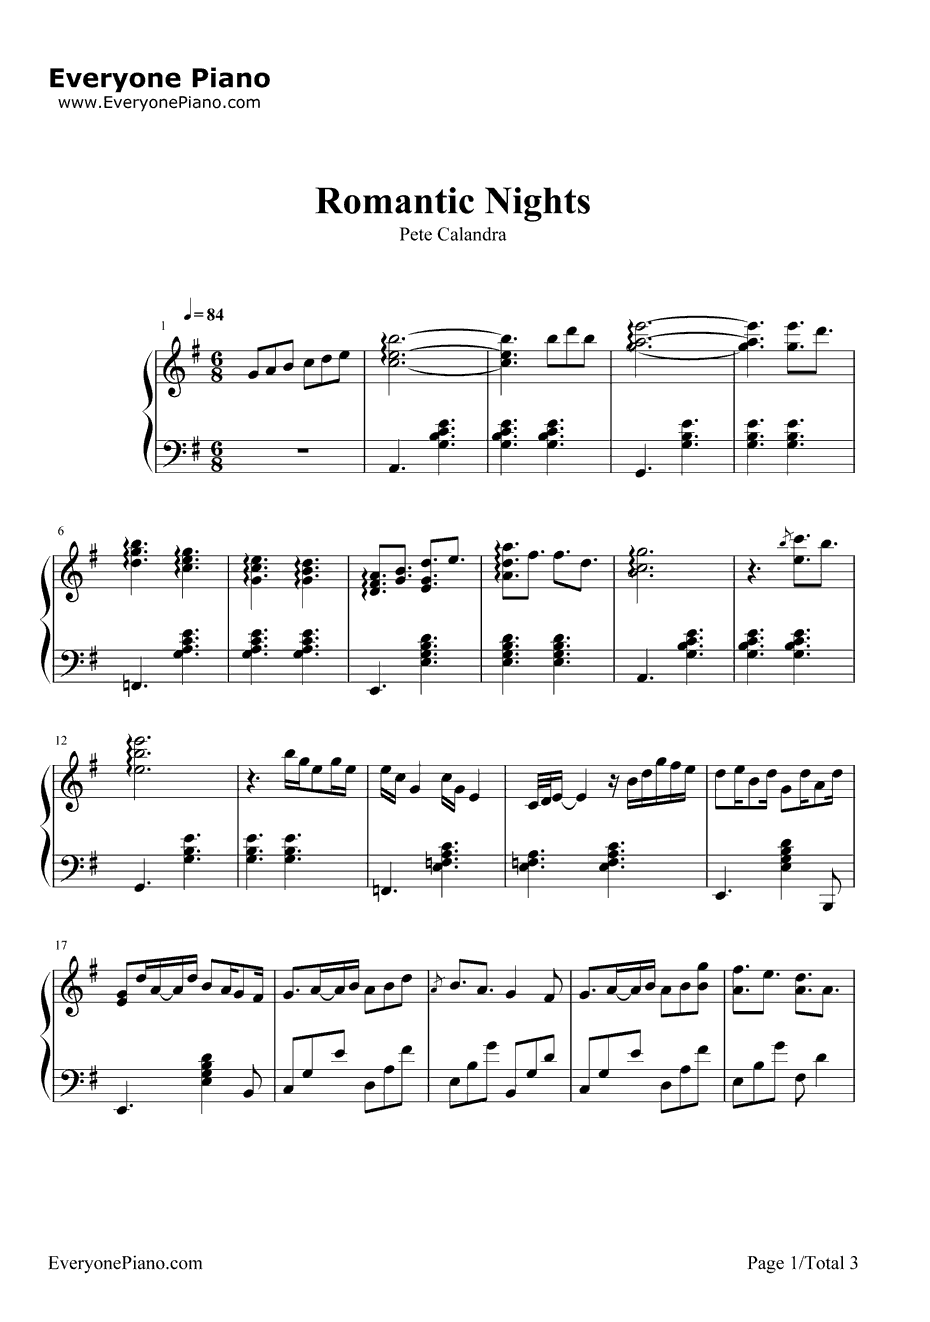 RomanticNights钢琴谱-PeteCalandra-爱情公寓插曲1